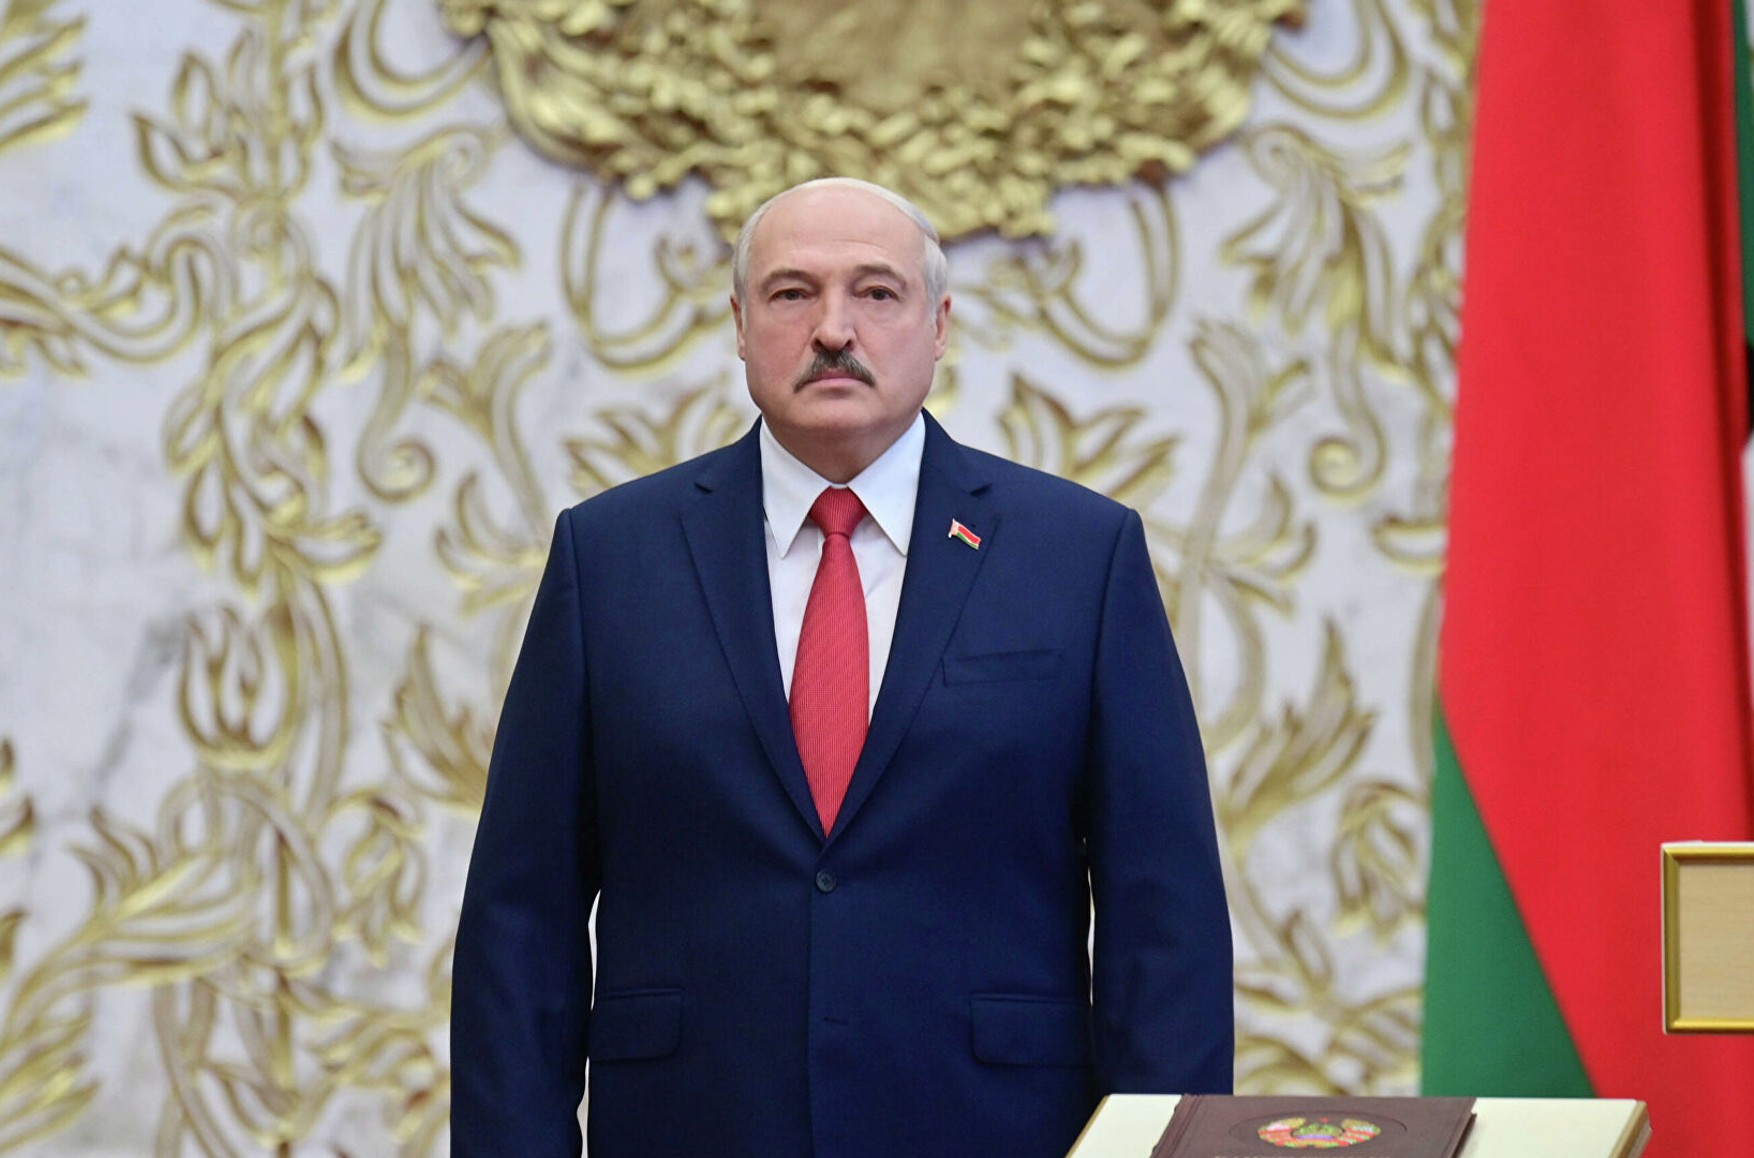 Лукашенко заявив, що передасть 70-80% повноважень президента парламенту і уряду